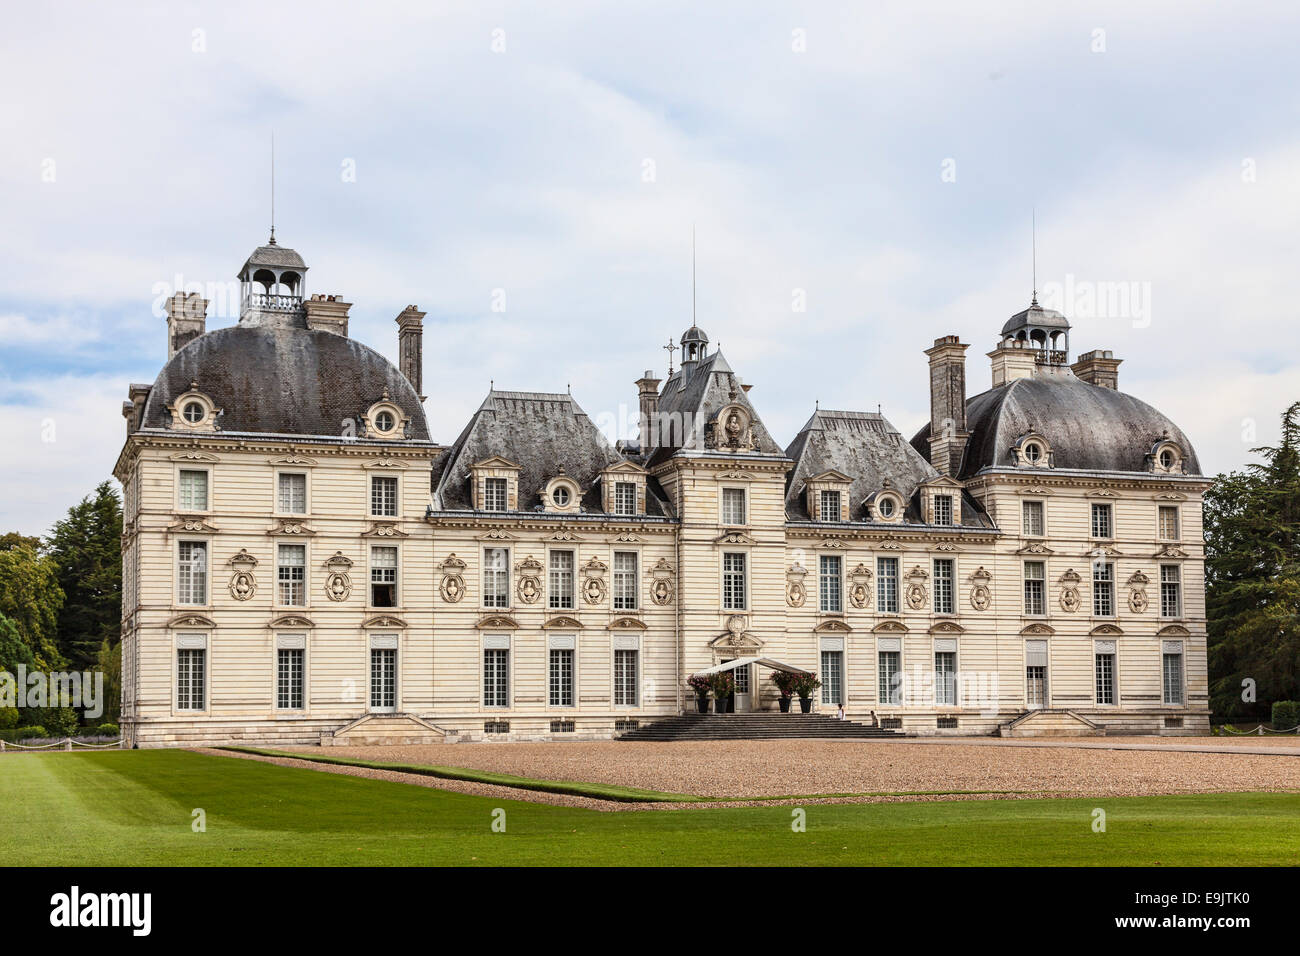 Image de l'Cheverny château situé dans la vallée de la Loire en France, au cours d'une journée nuageuse. Banque D'Images